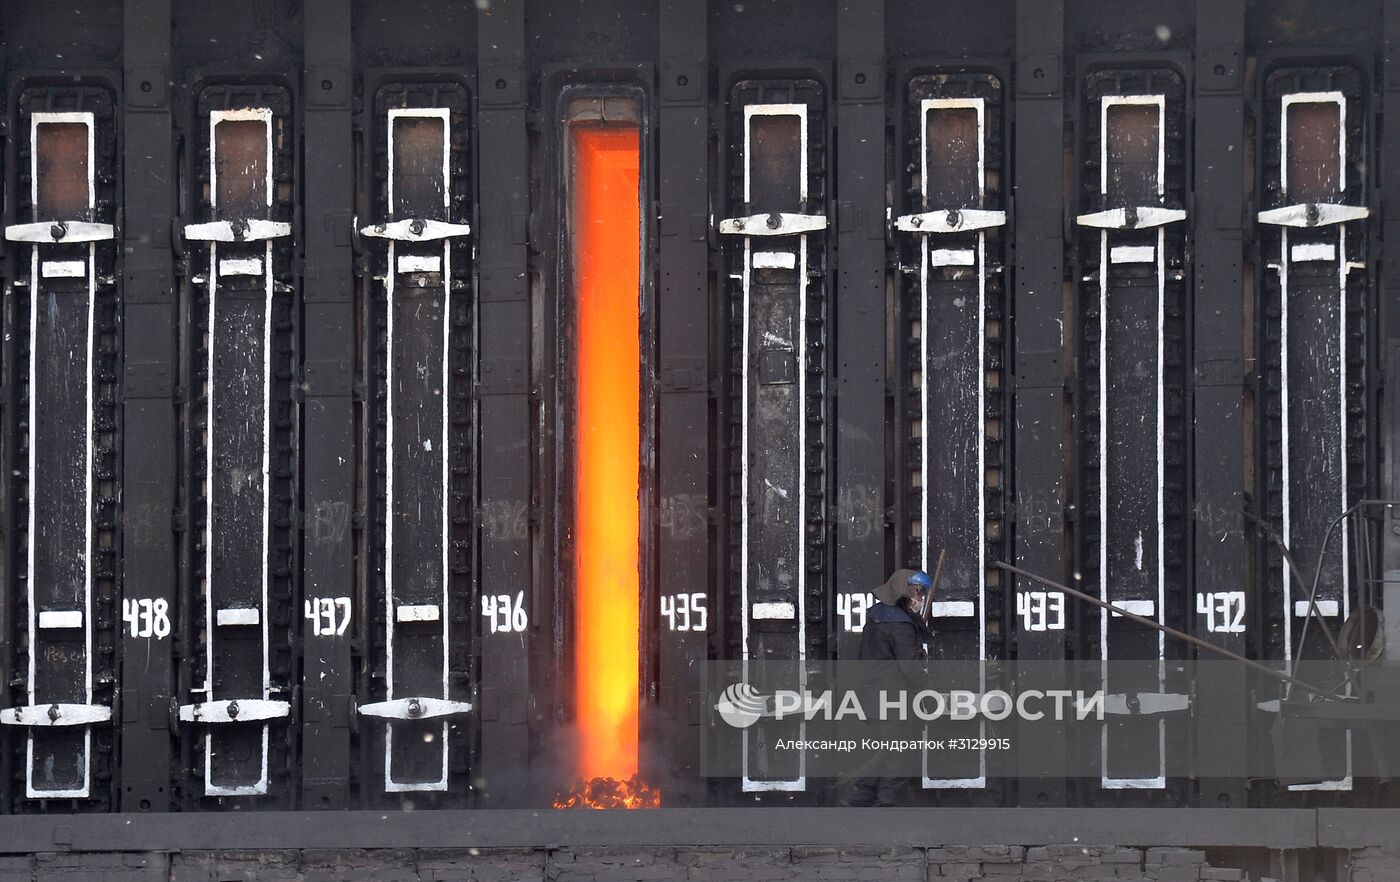 Завод "Мечел-Кокс" в Челябинской области